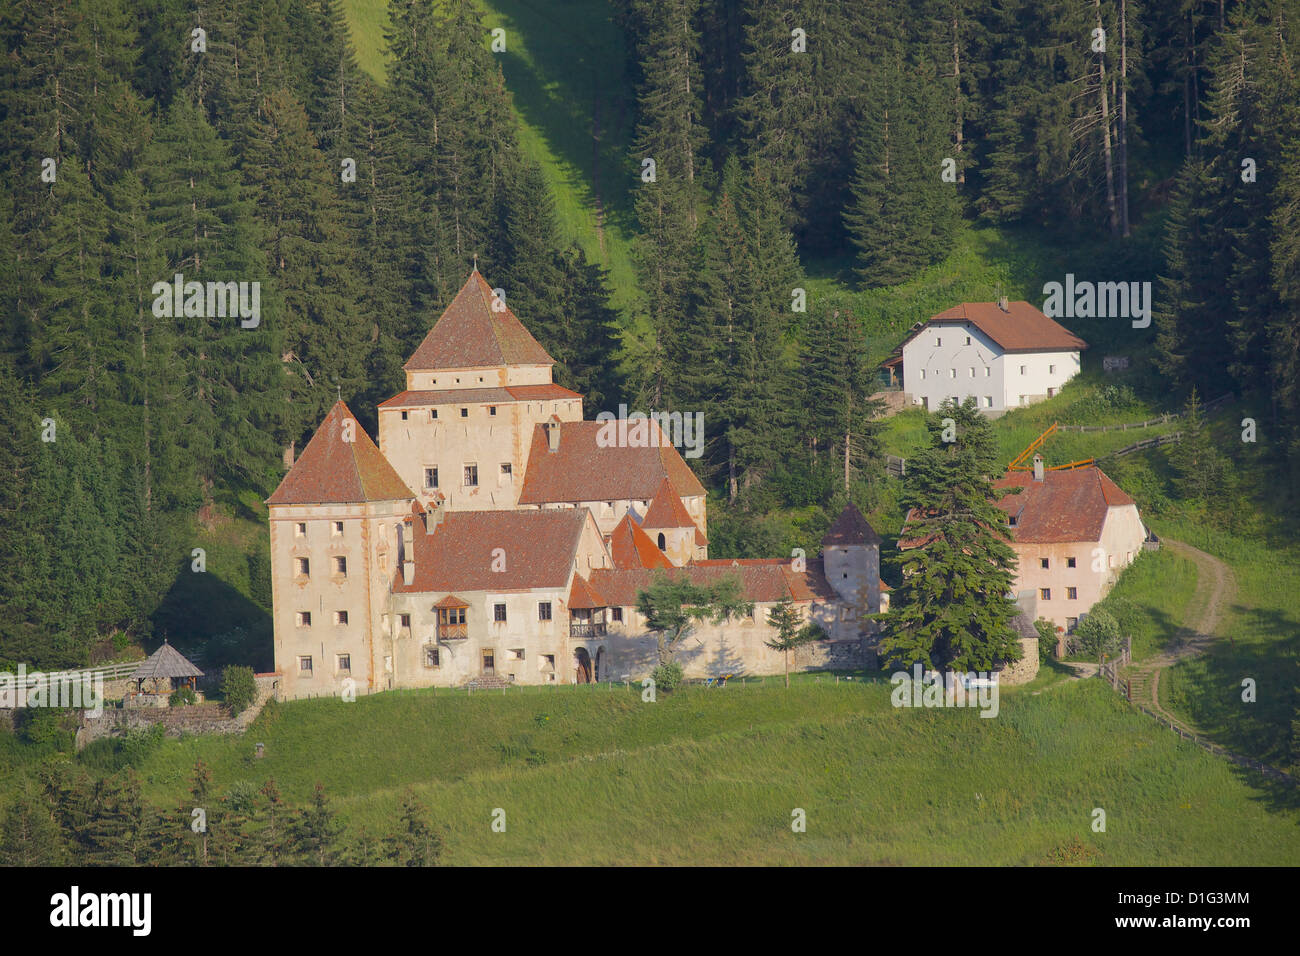 Gardena Castle, St. Cristina, Gardena Valley, Bolzano Province, Trentino-Alto Adige/South Tyrol, Italian Dolomites, Italy Stock Photo